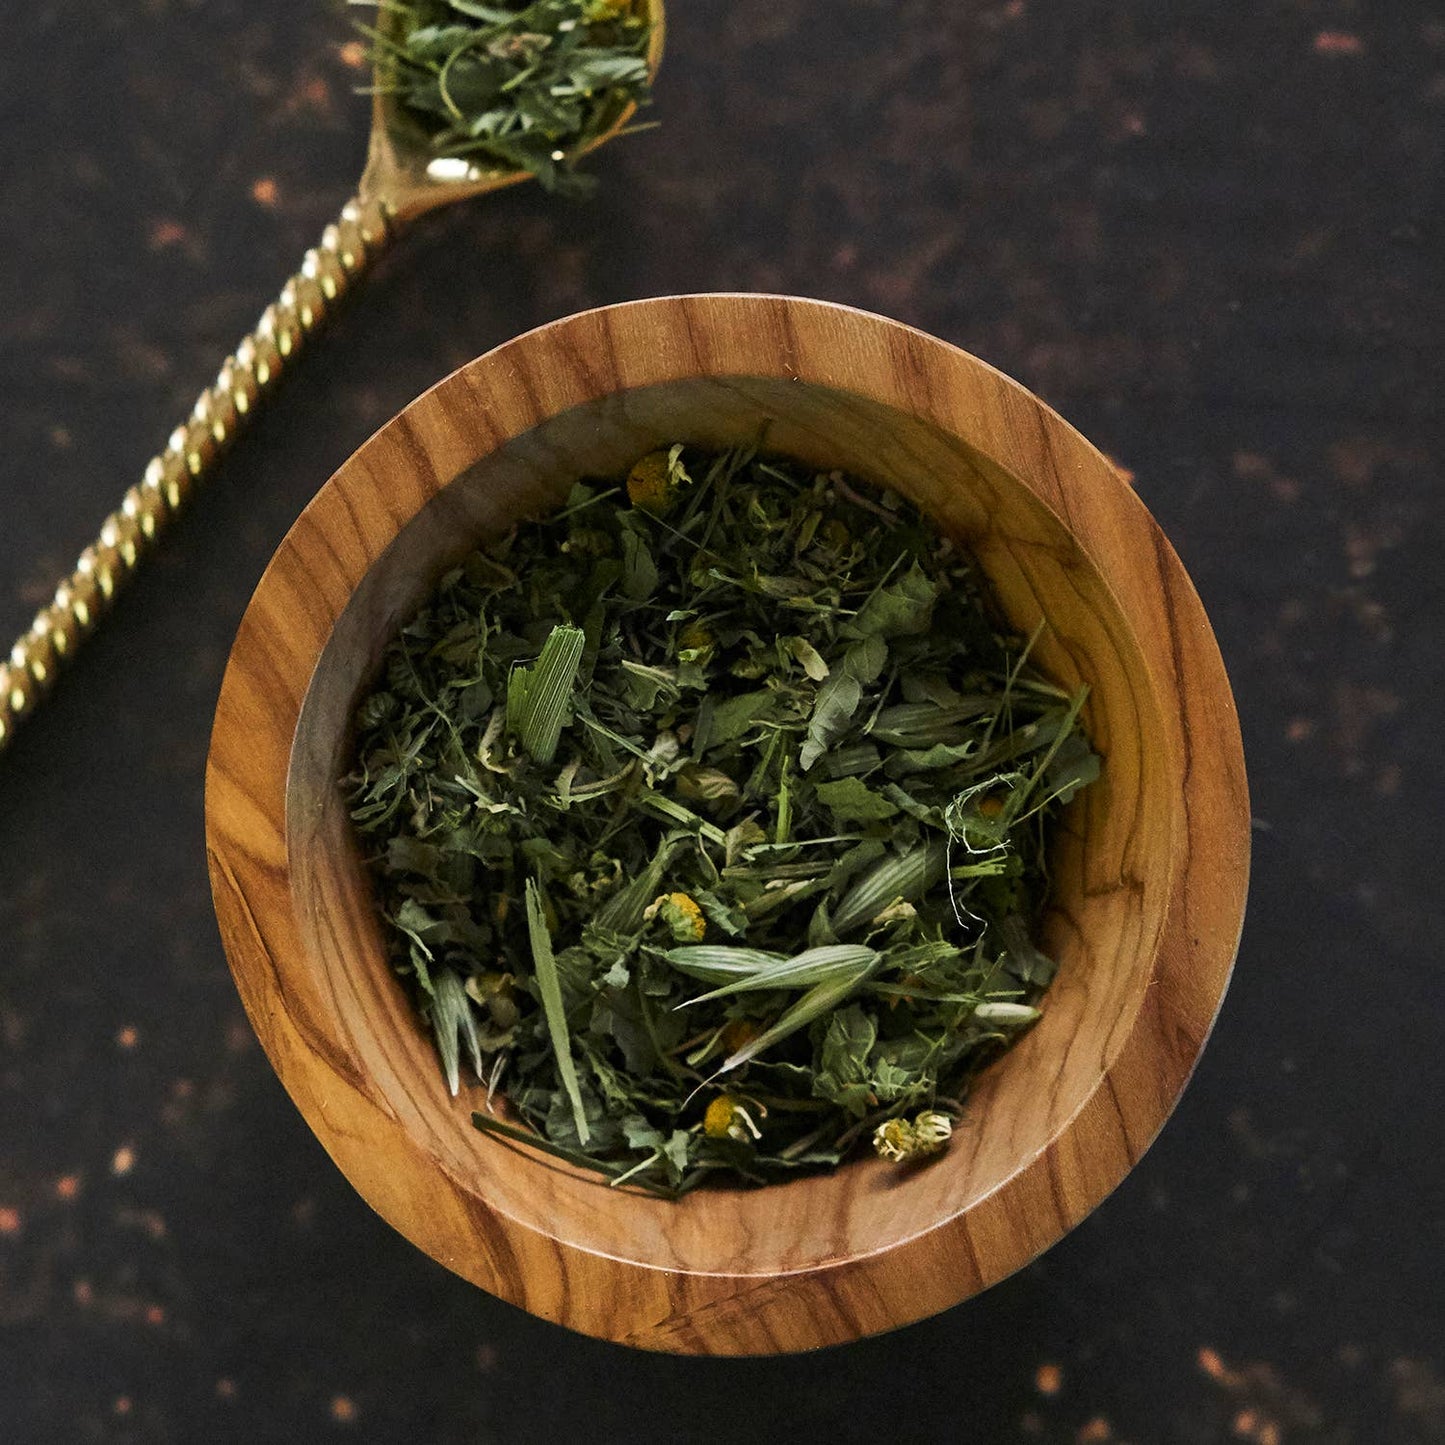 The Star-a Tarot inspired herbal tea blend